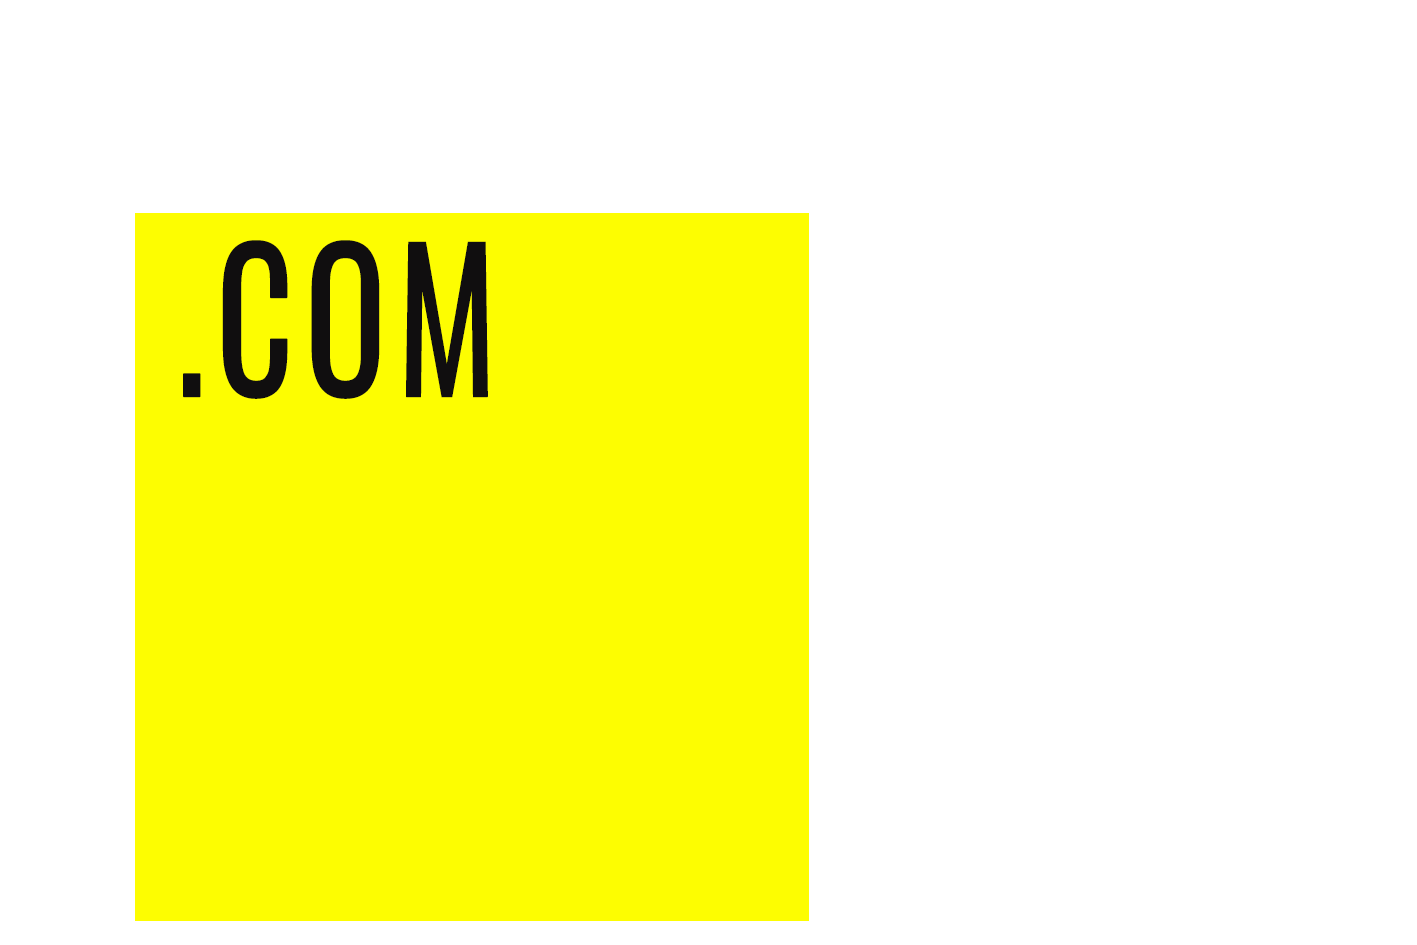 (c) Blankandjones.com